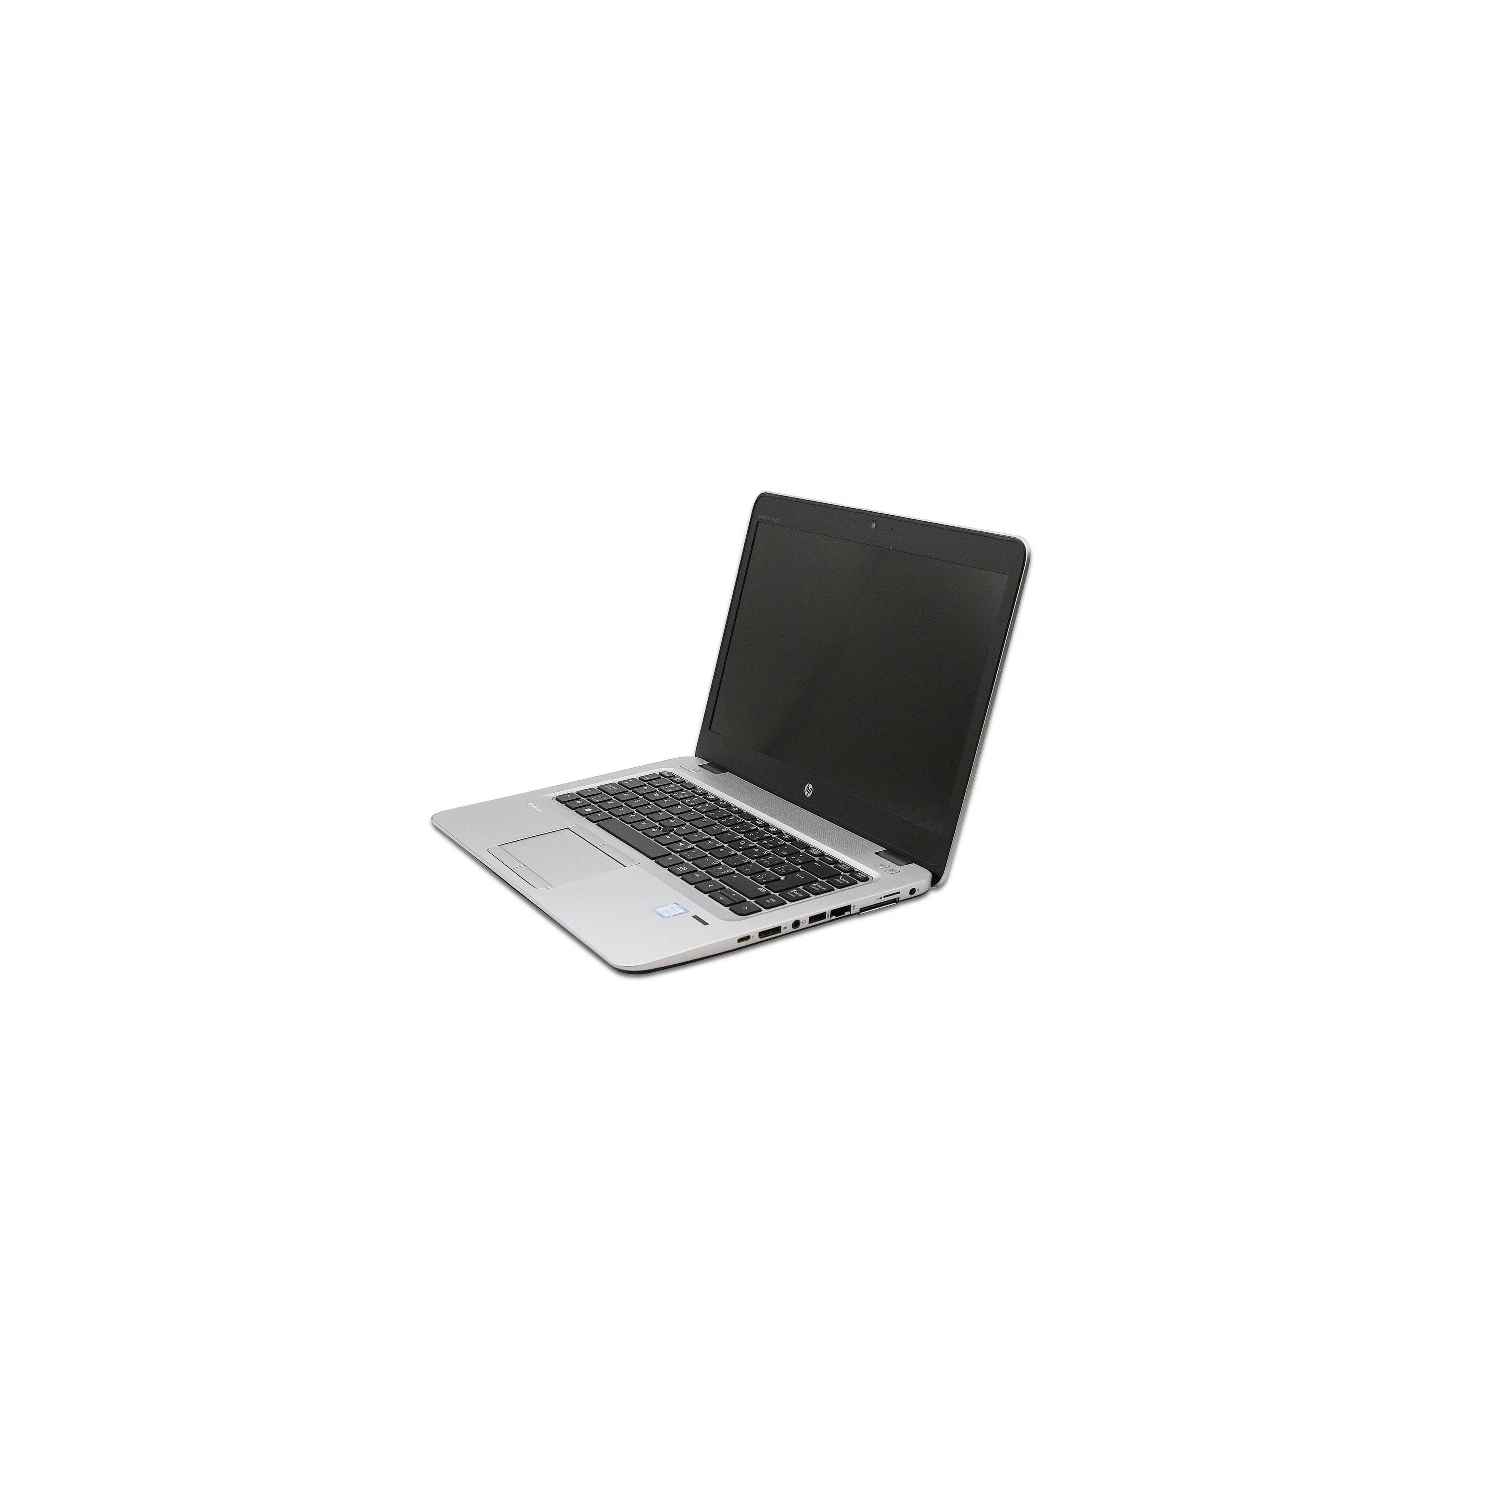 Refurbished (Good) - HP EliteBook 840 G3 i5 6300U 8 GB 120 GB SSD WIN10 Pro